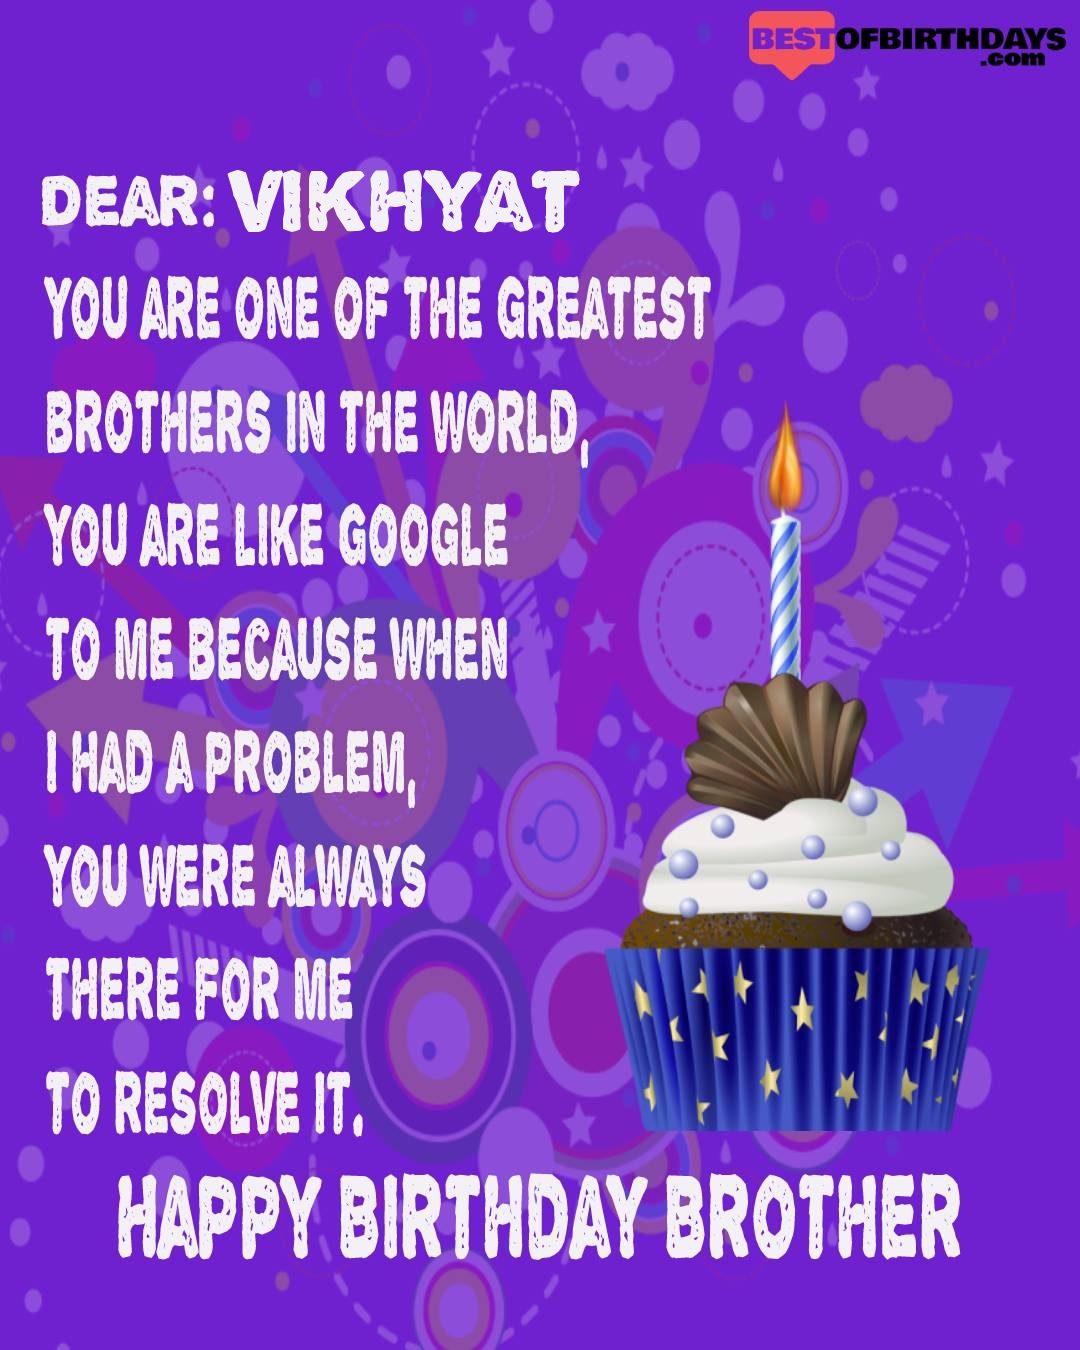 Happy birthday vikhyat bhai brother bro